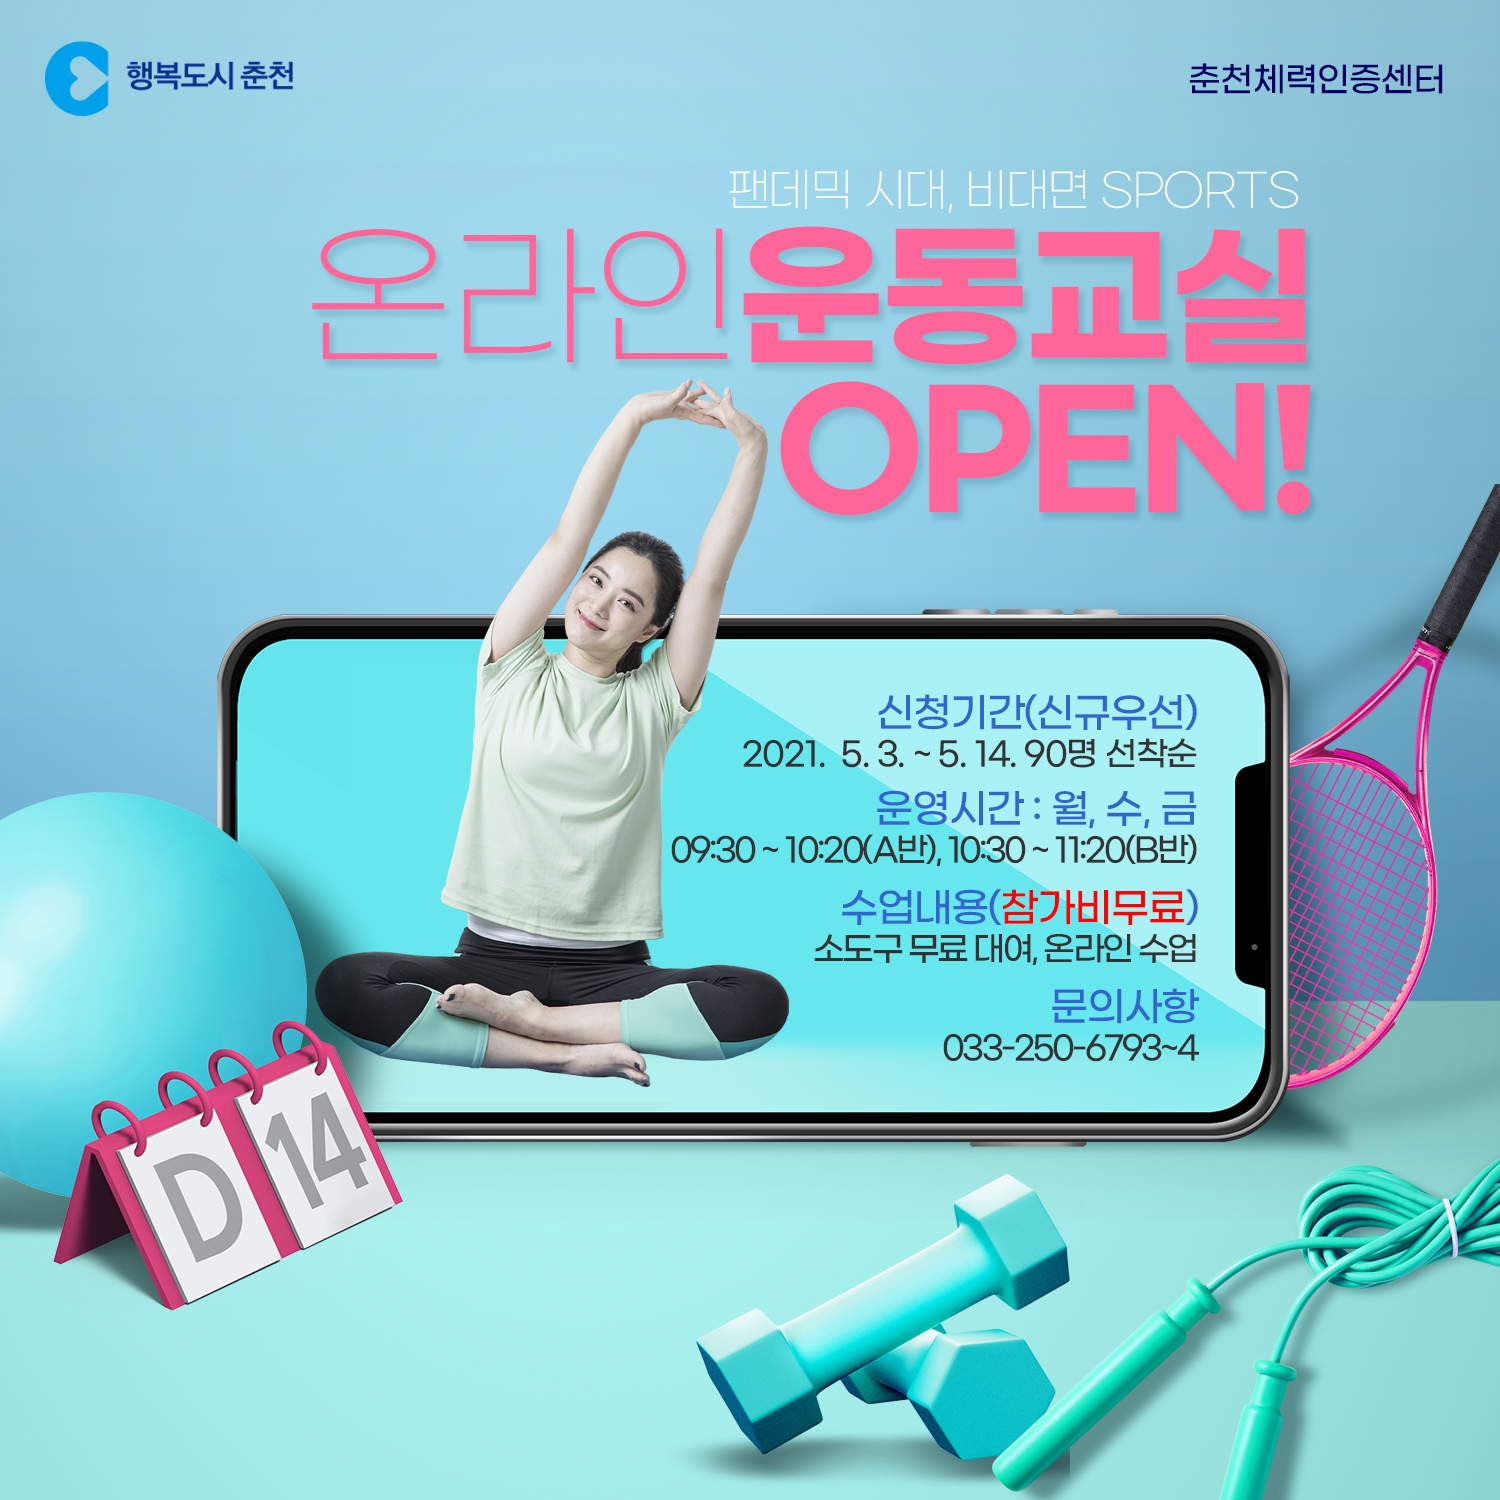 춘천체력인증센터 온라인 운동교실 OPEN!